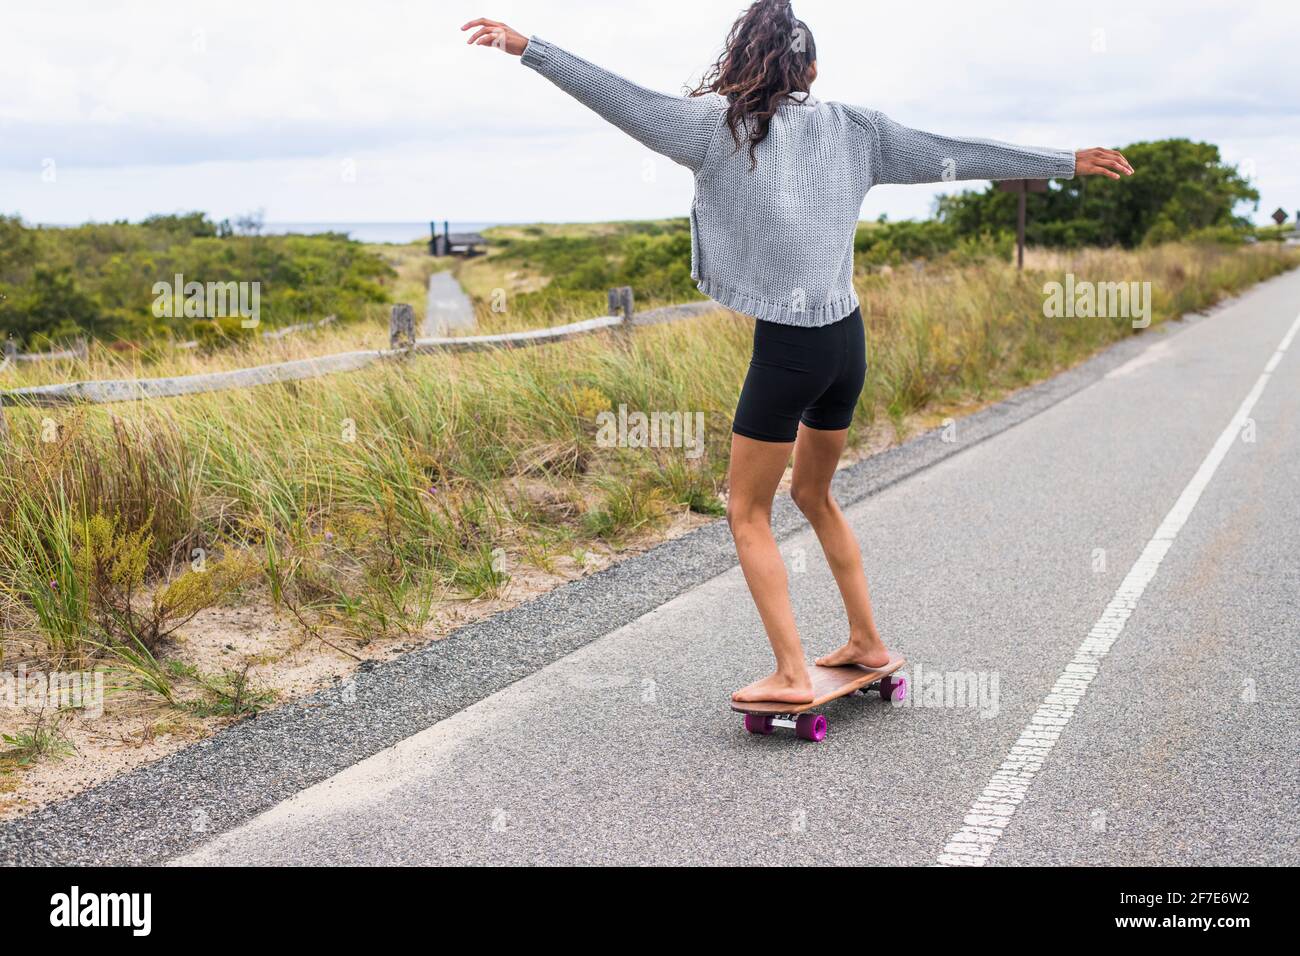 Jeune femme skate pieds nus le jour couvert Photo Stock - Alamy